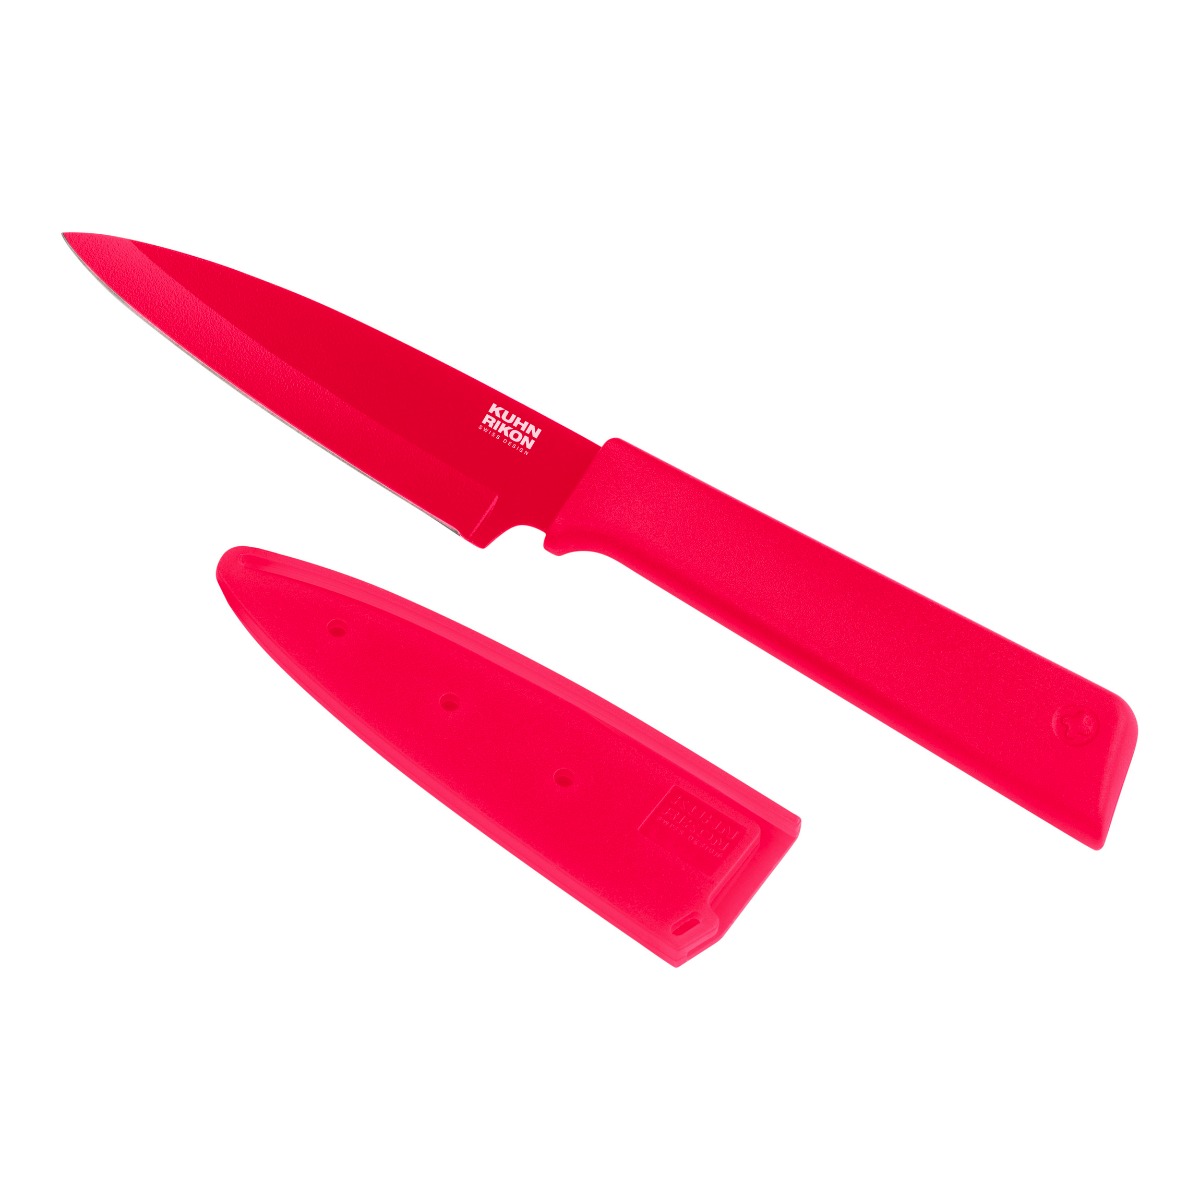 Kuhn Rikon - Colori(r)+ Paring Knife fuchsia